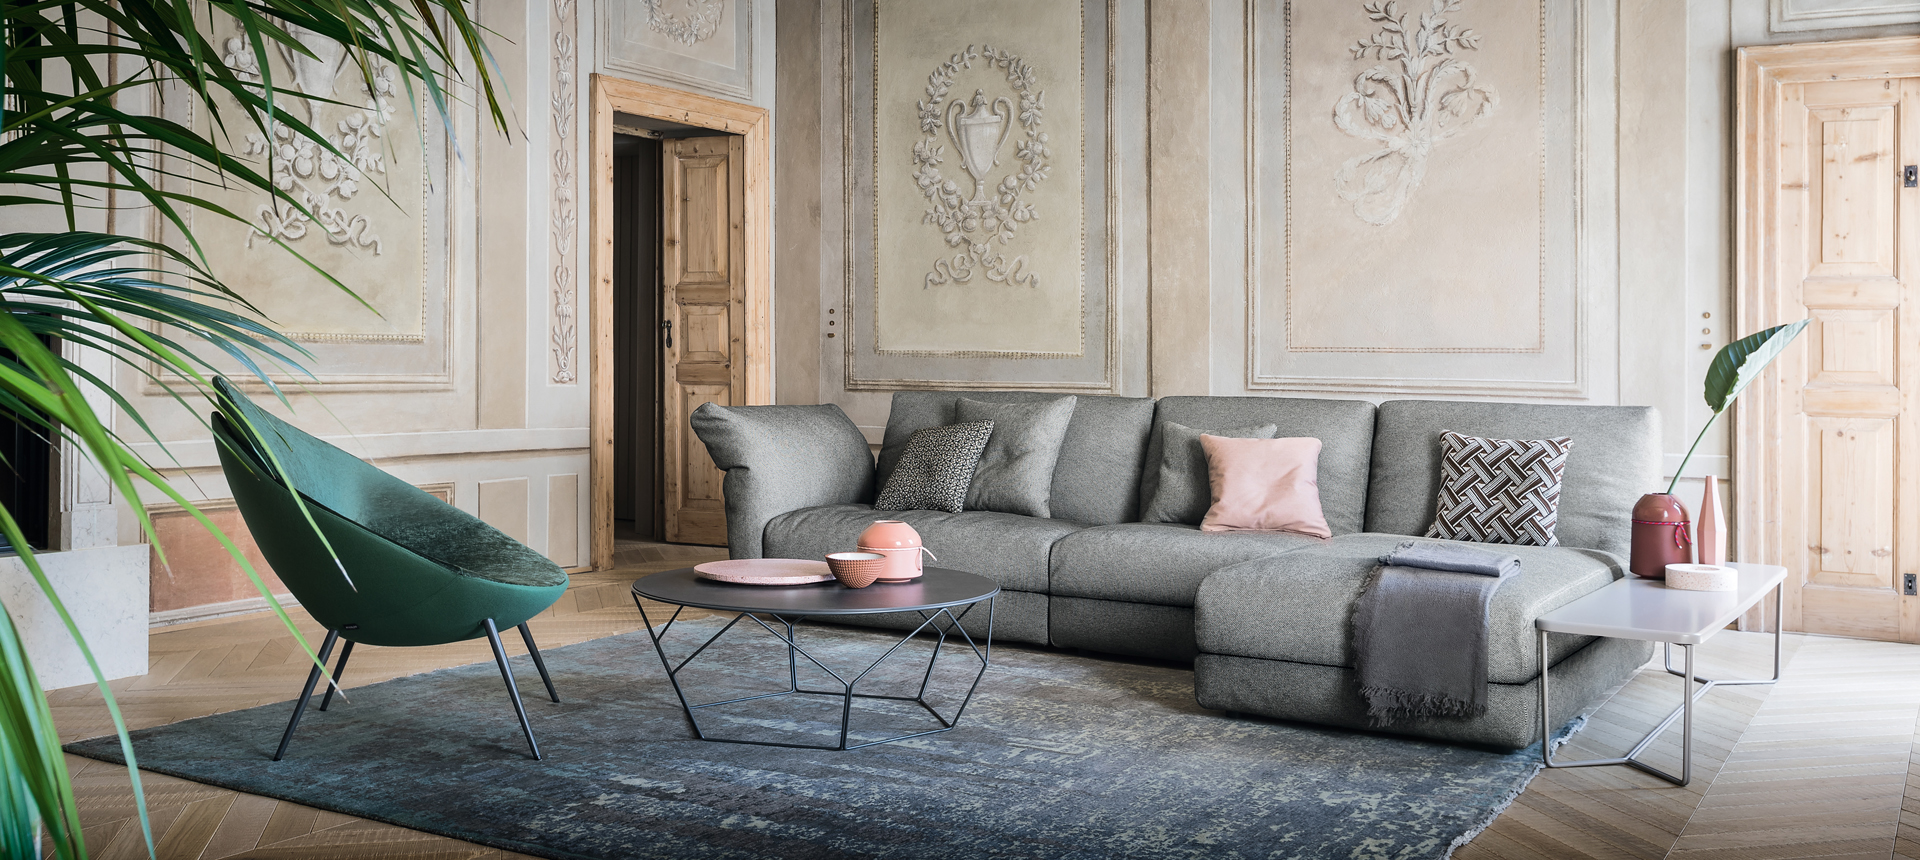 designer living room furniture set